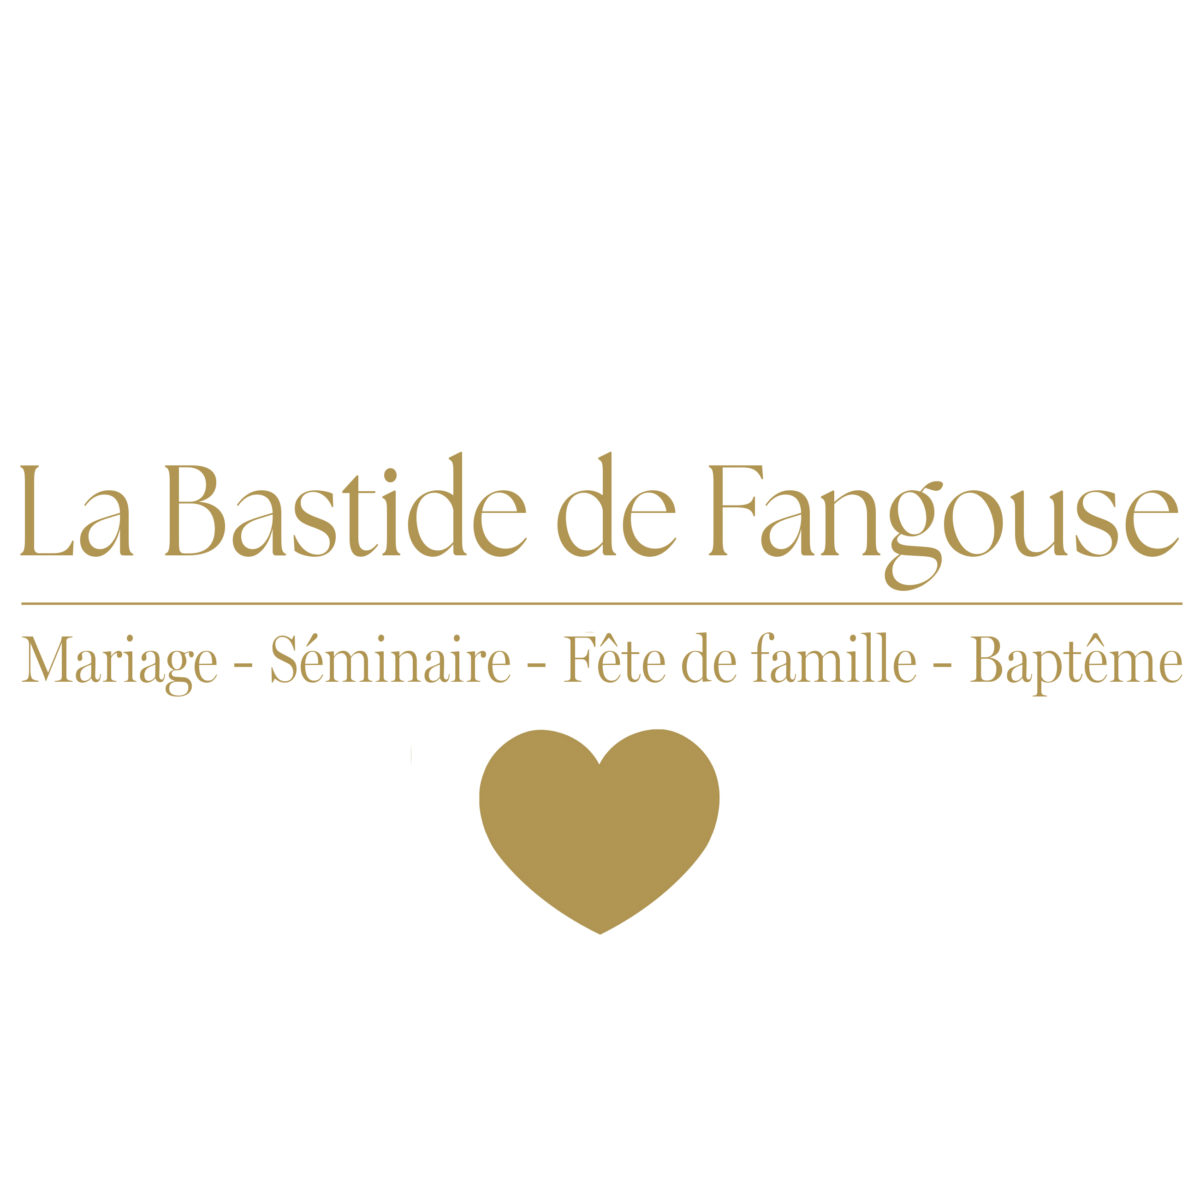 La Bastide de Fangouse